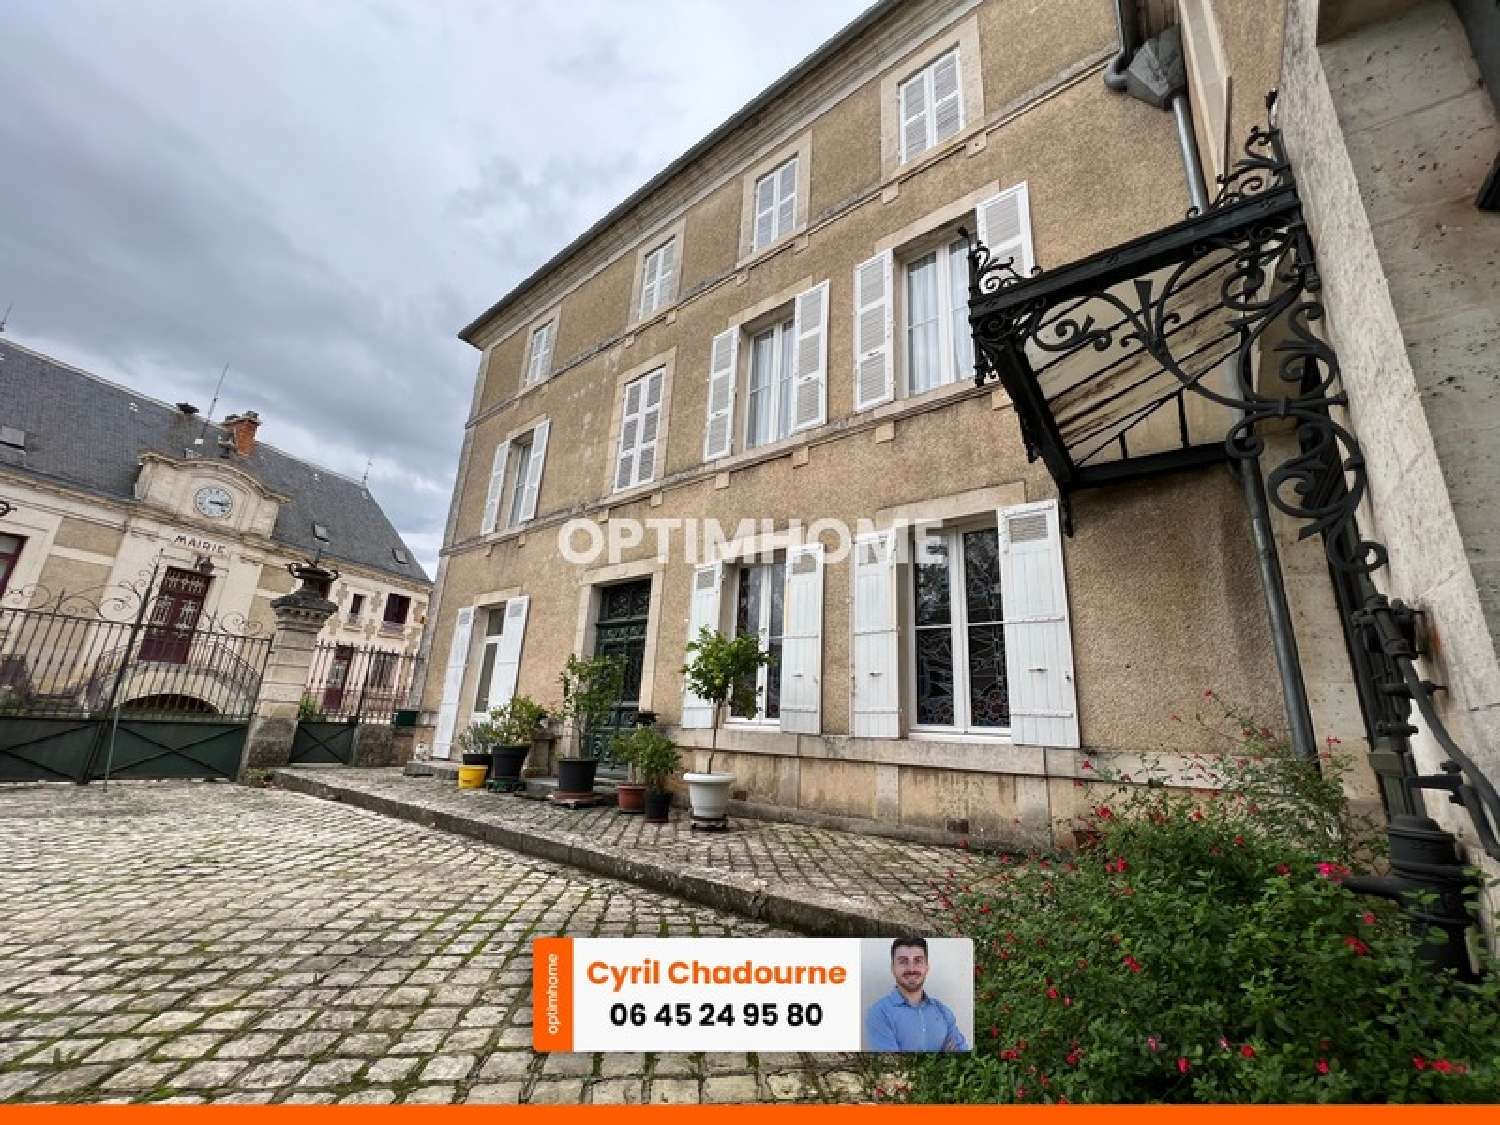  à vendre maison bourgeoise Nontron Dordogne 2